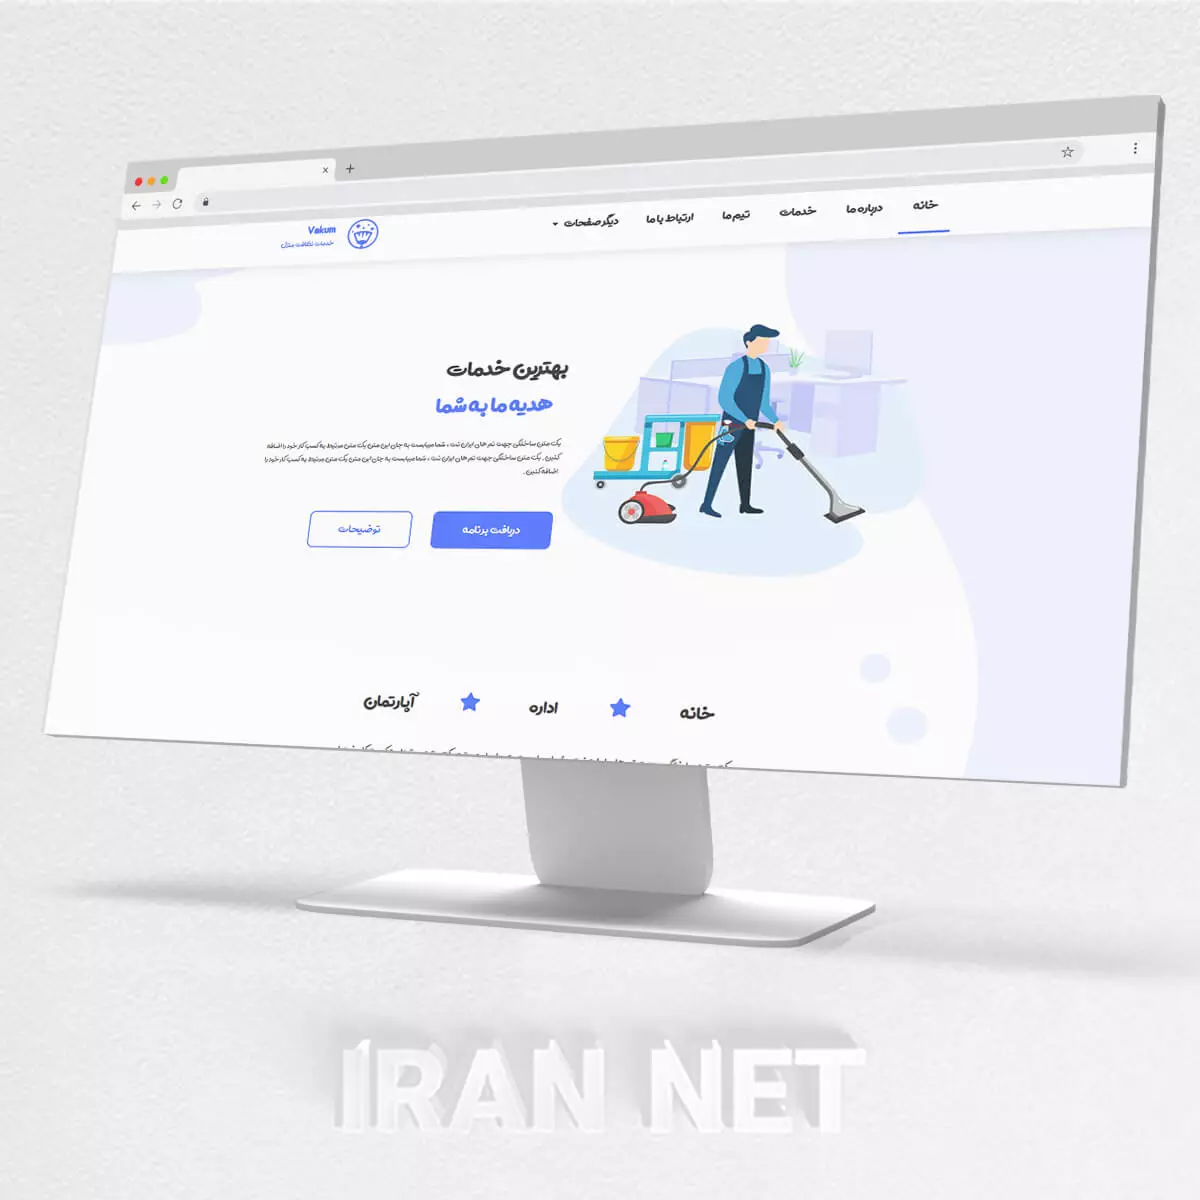 سایت رایگان-تم خدمات و نظافت-طراحی سای رایگان-ایران نت